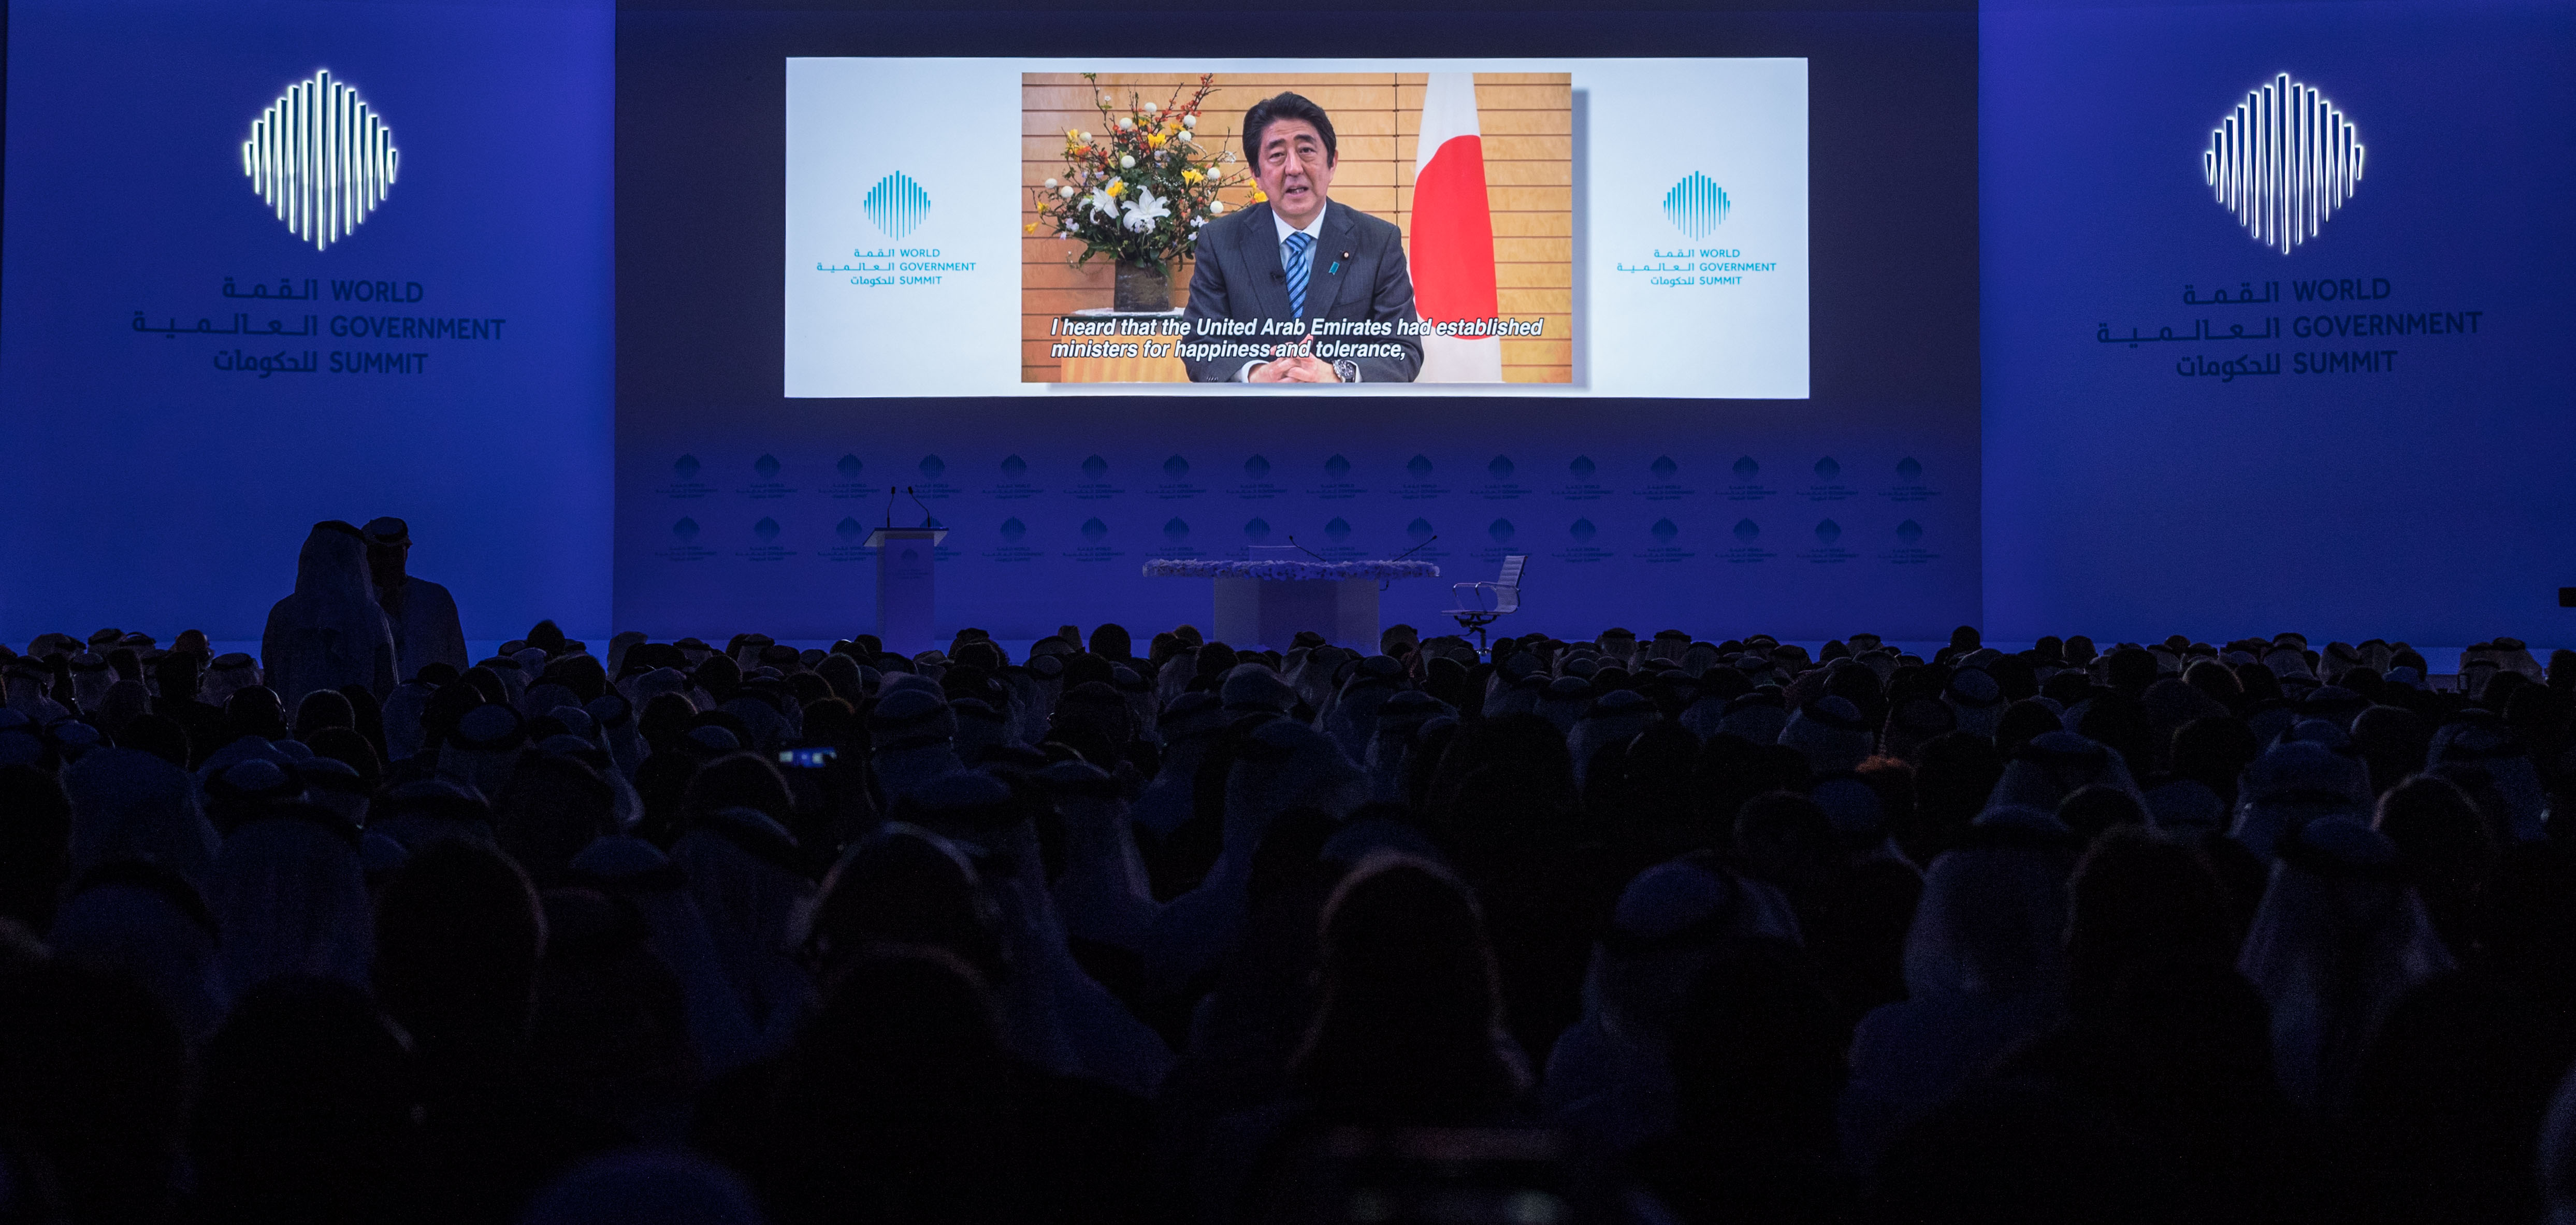 رئيس وزراء اليابان: الإمارات العربية المتحدة مثال عن قدرة عمل جميع الجنسيات مع بعضها